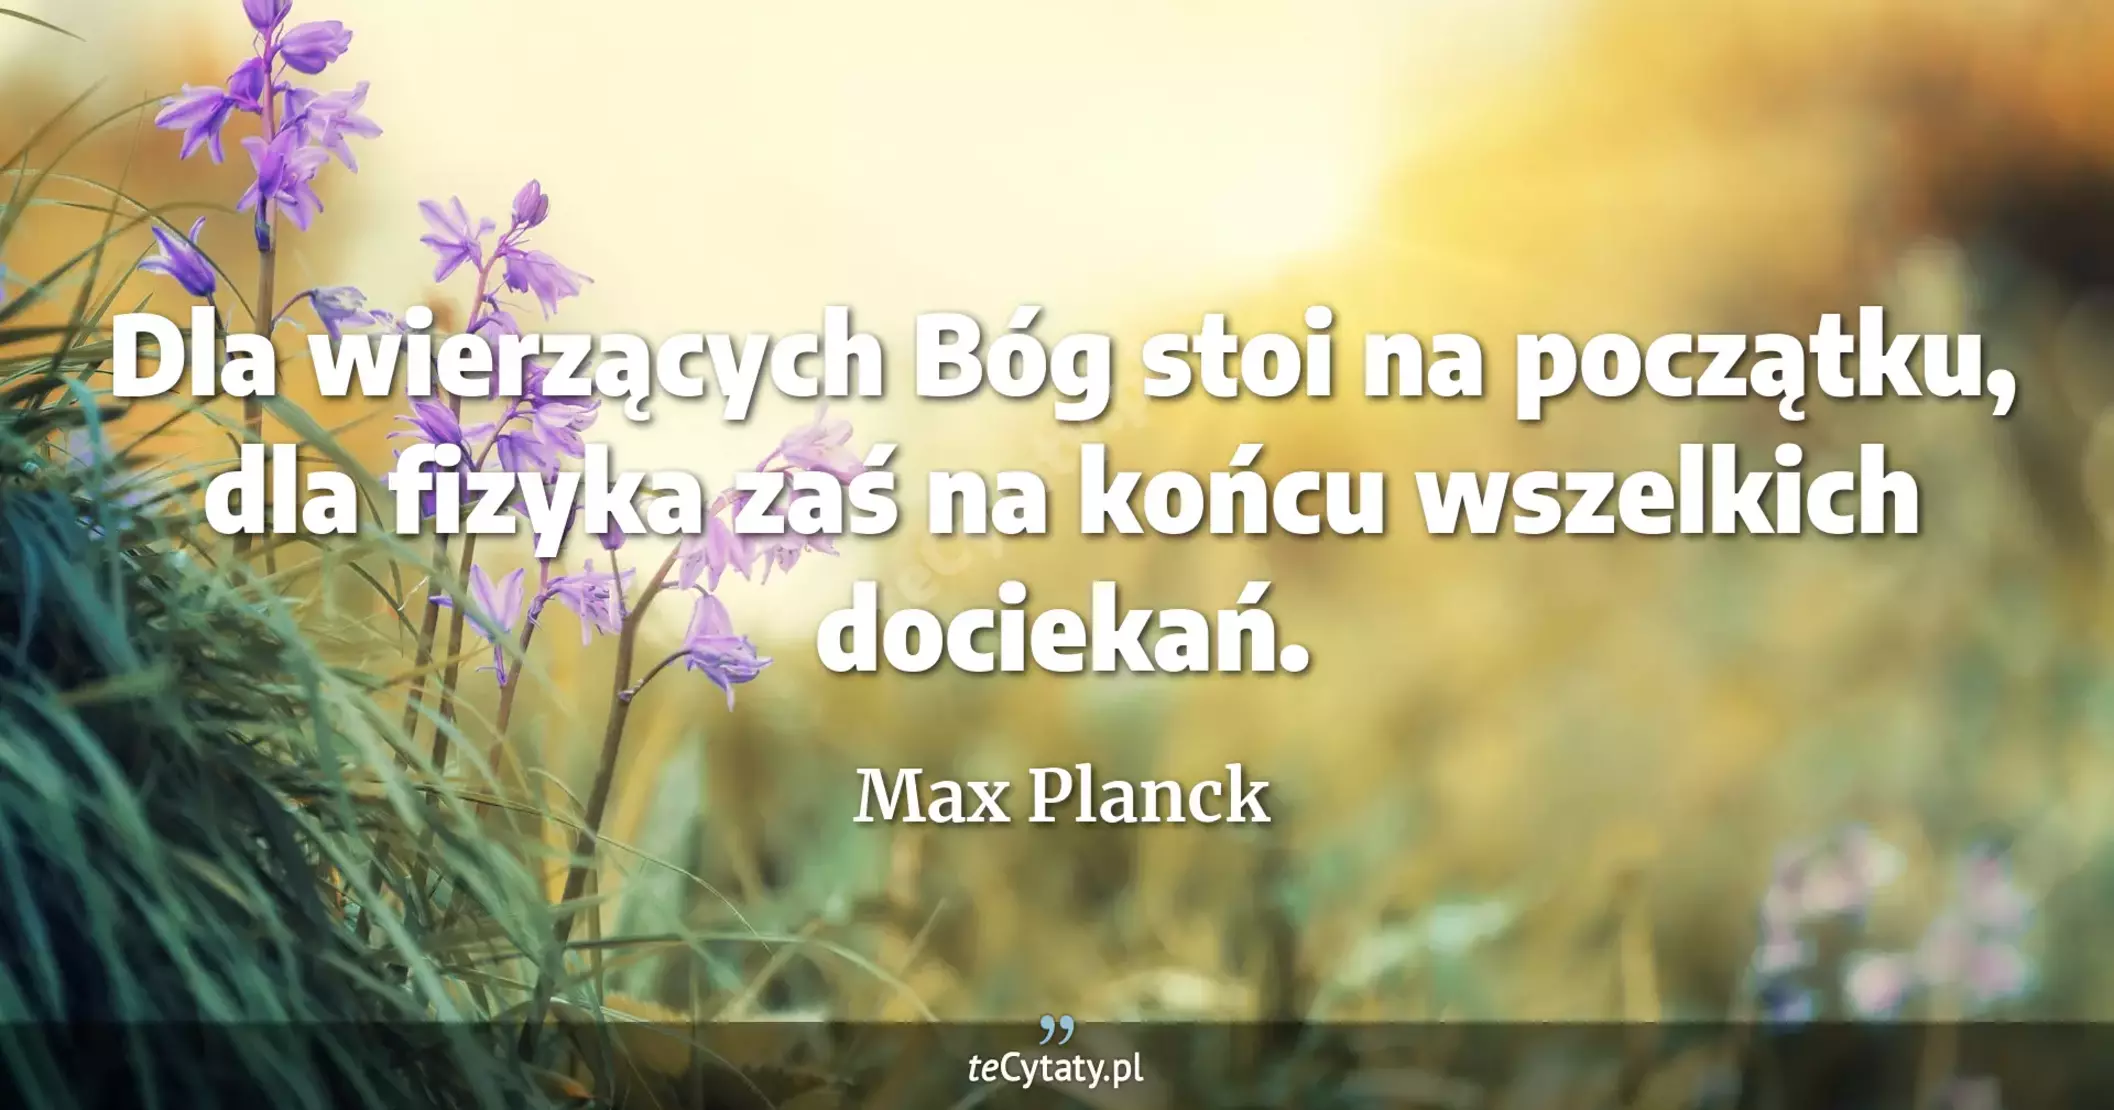 Dla wierzących Bóg stoi na początku, dla fizyka zaś na końcu wszelkich dociekań. - Max Planck